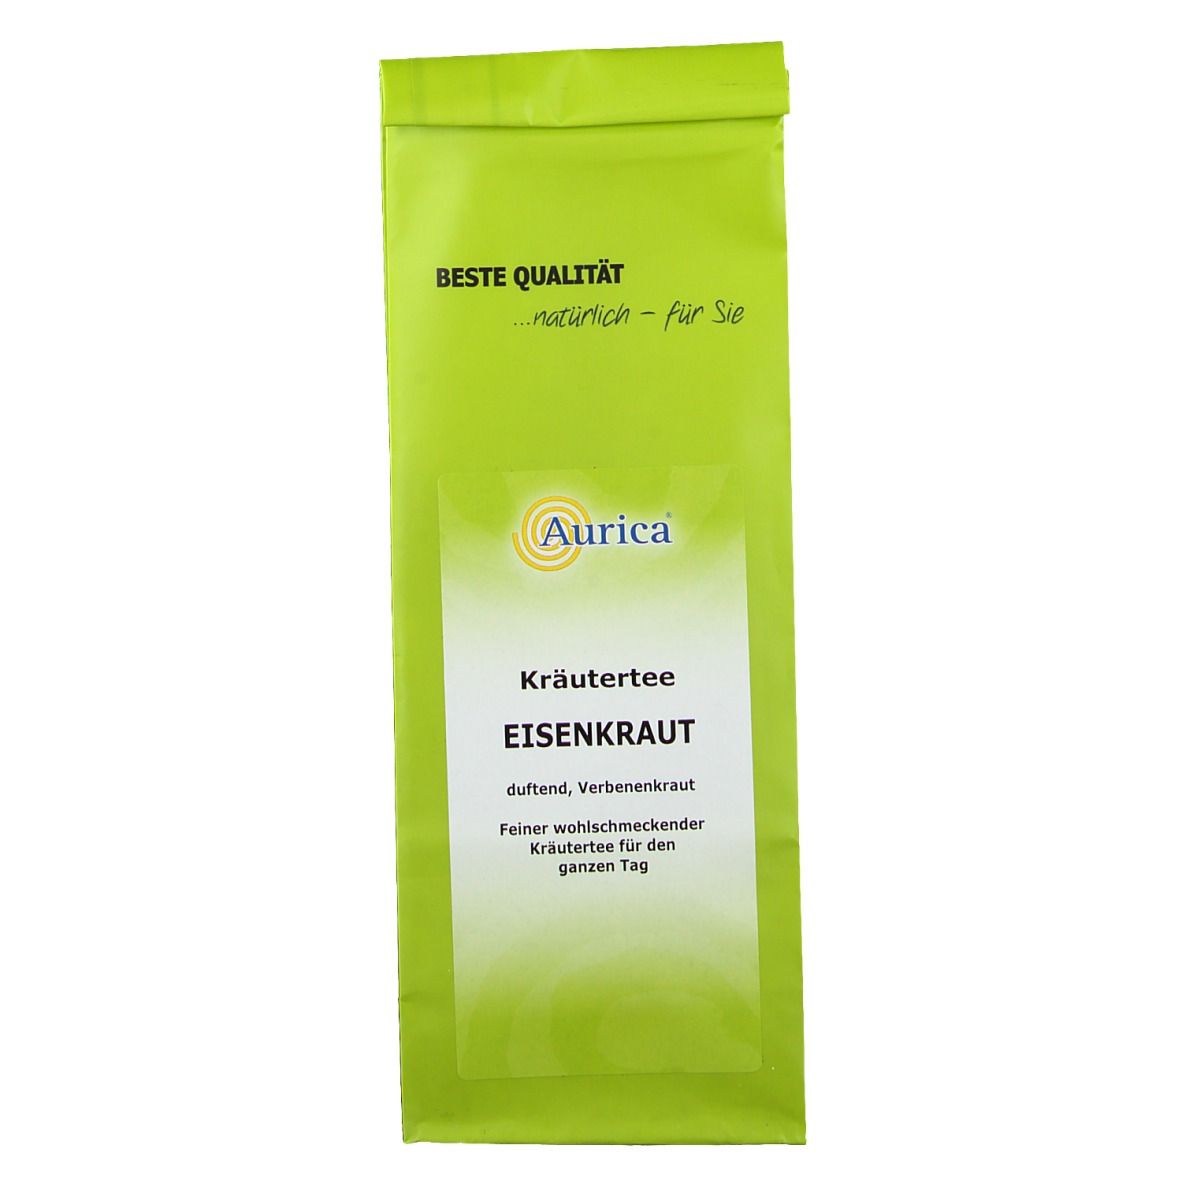 Aurica® Eisenkraut Kräutertee